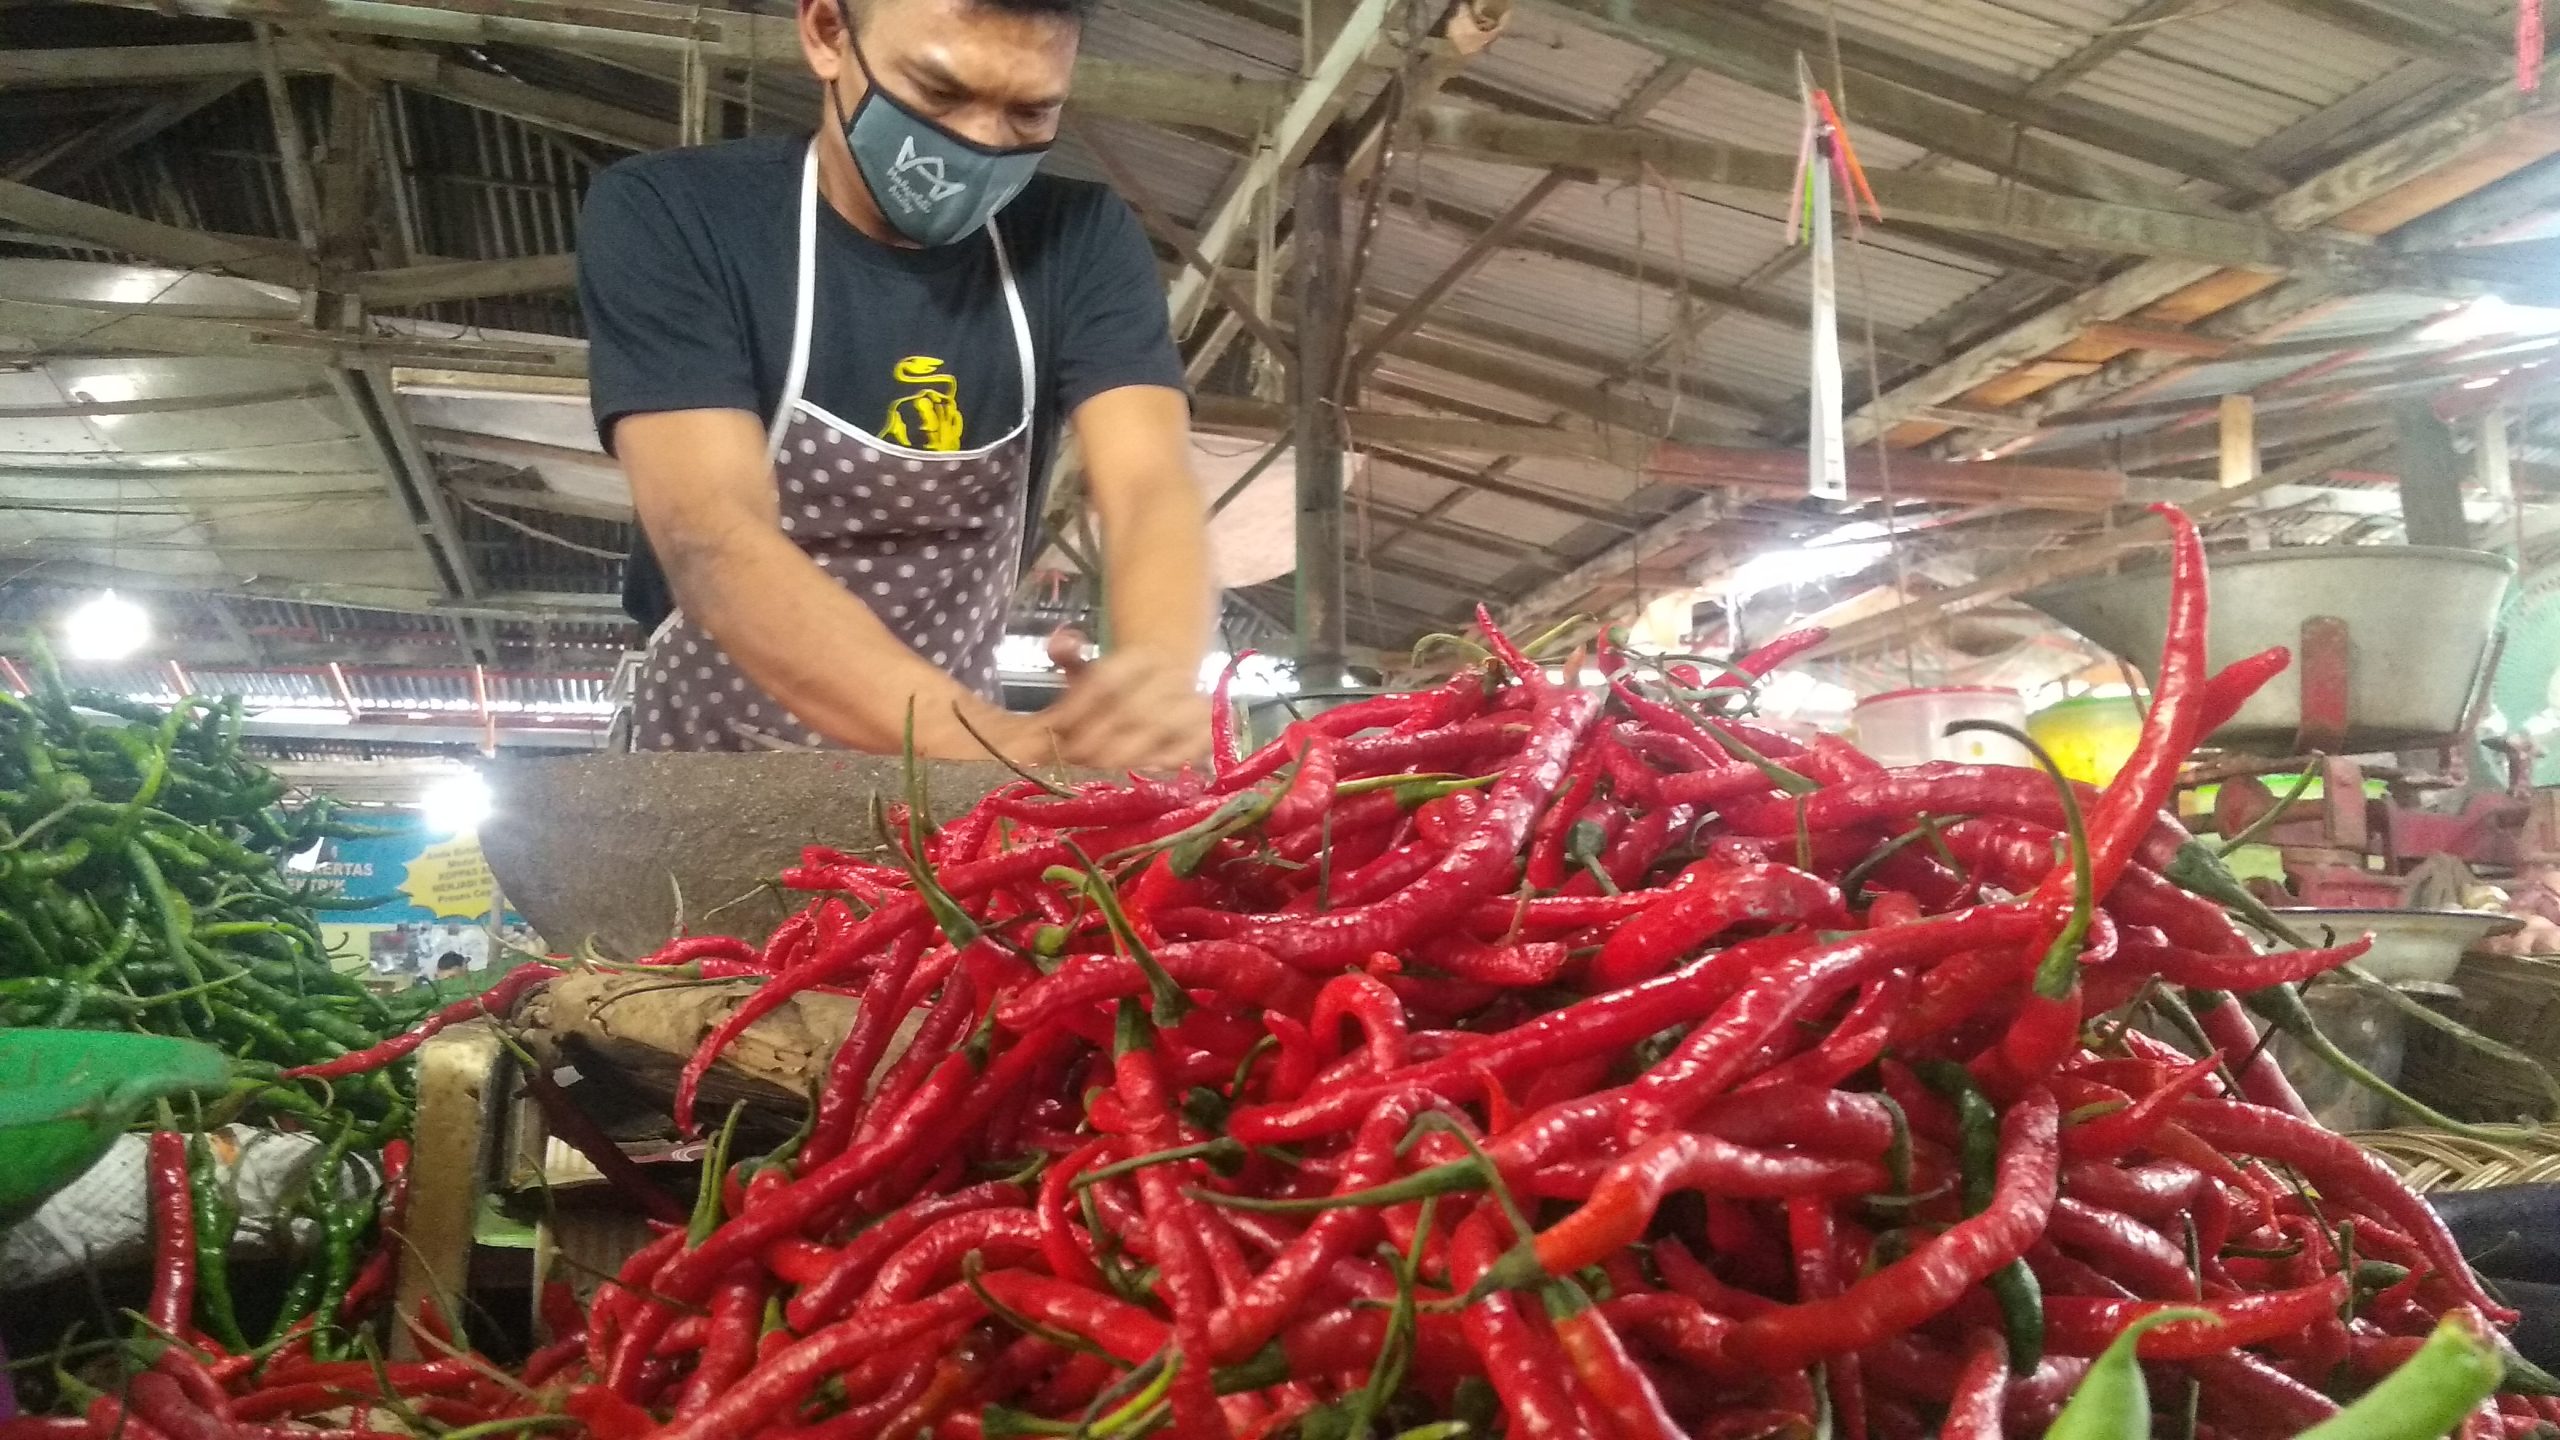 Pedagang cabai merah di Pasar Ulak Karang, Kota Padang, Sumatera Barat | Halonusa